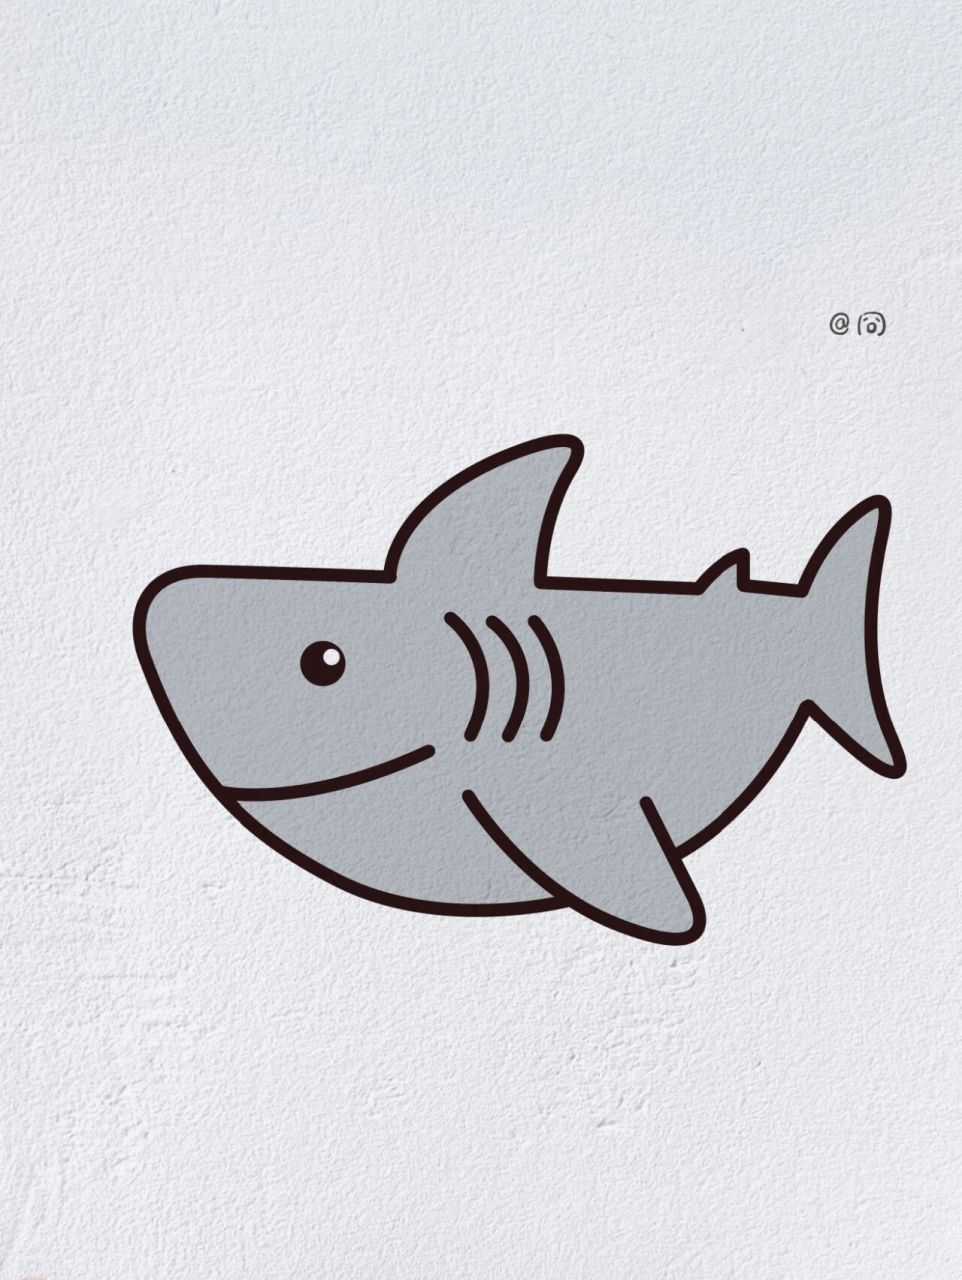 动物简笔画之凶猛的鲨鱼(内附过程图)